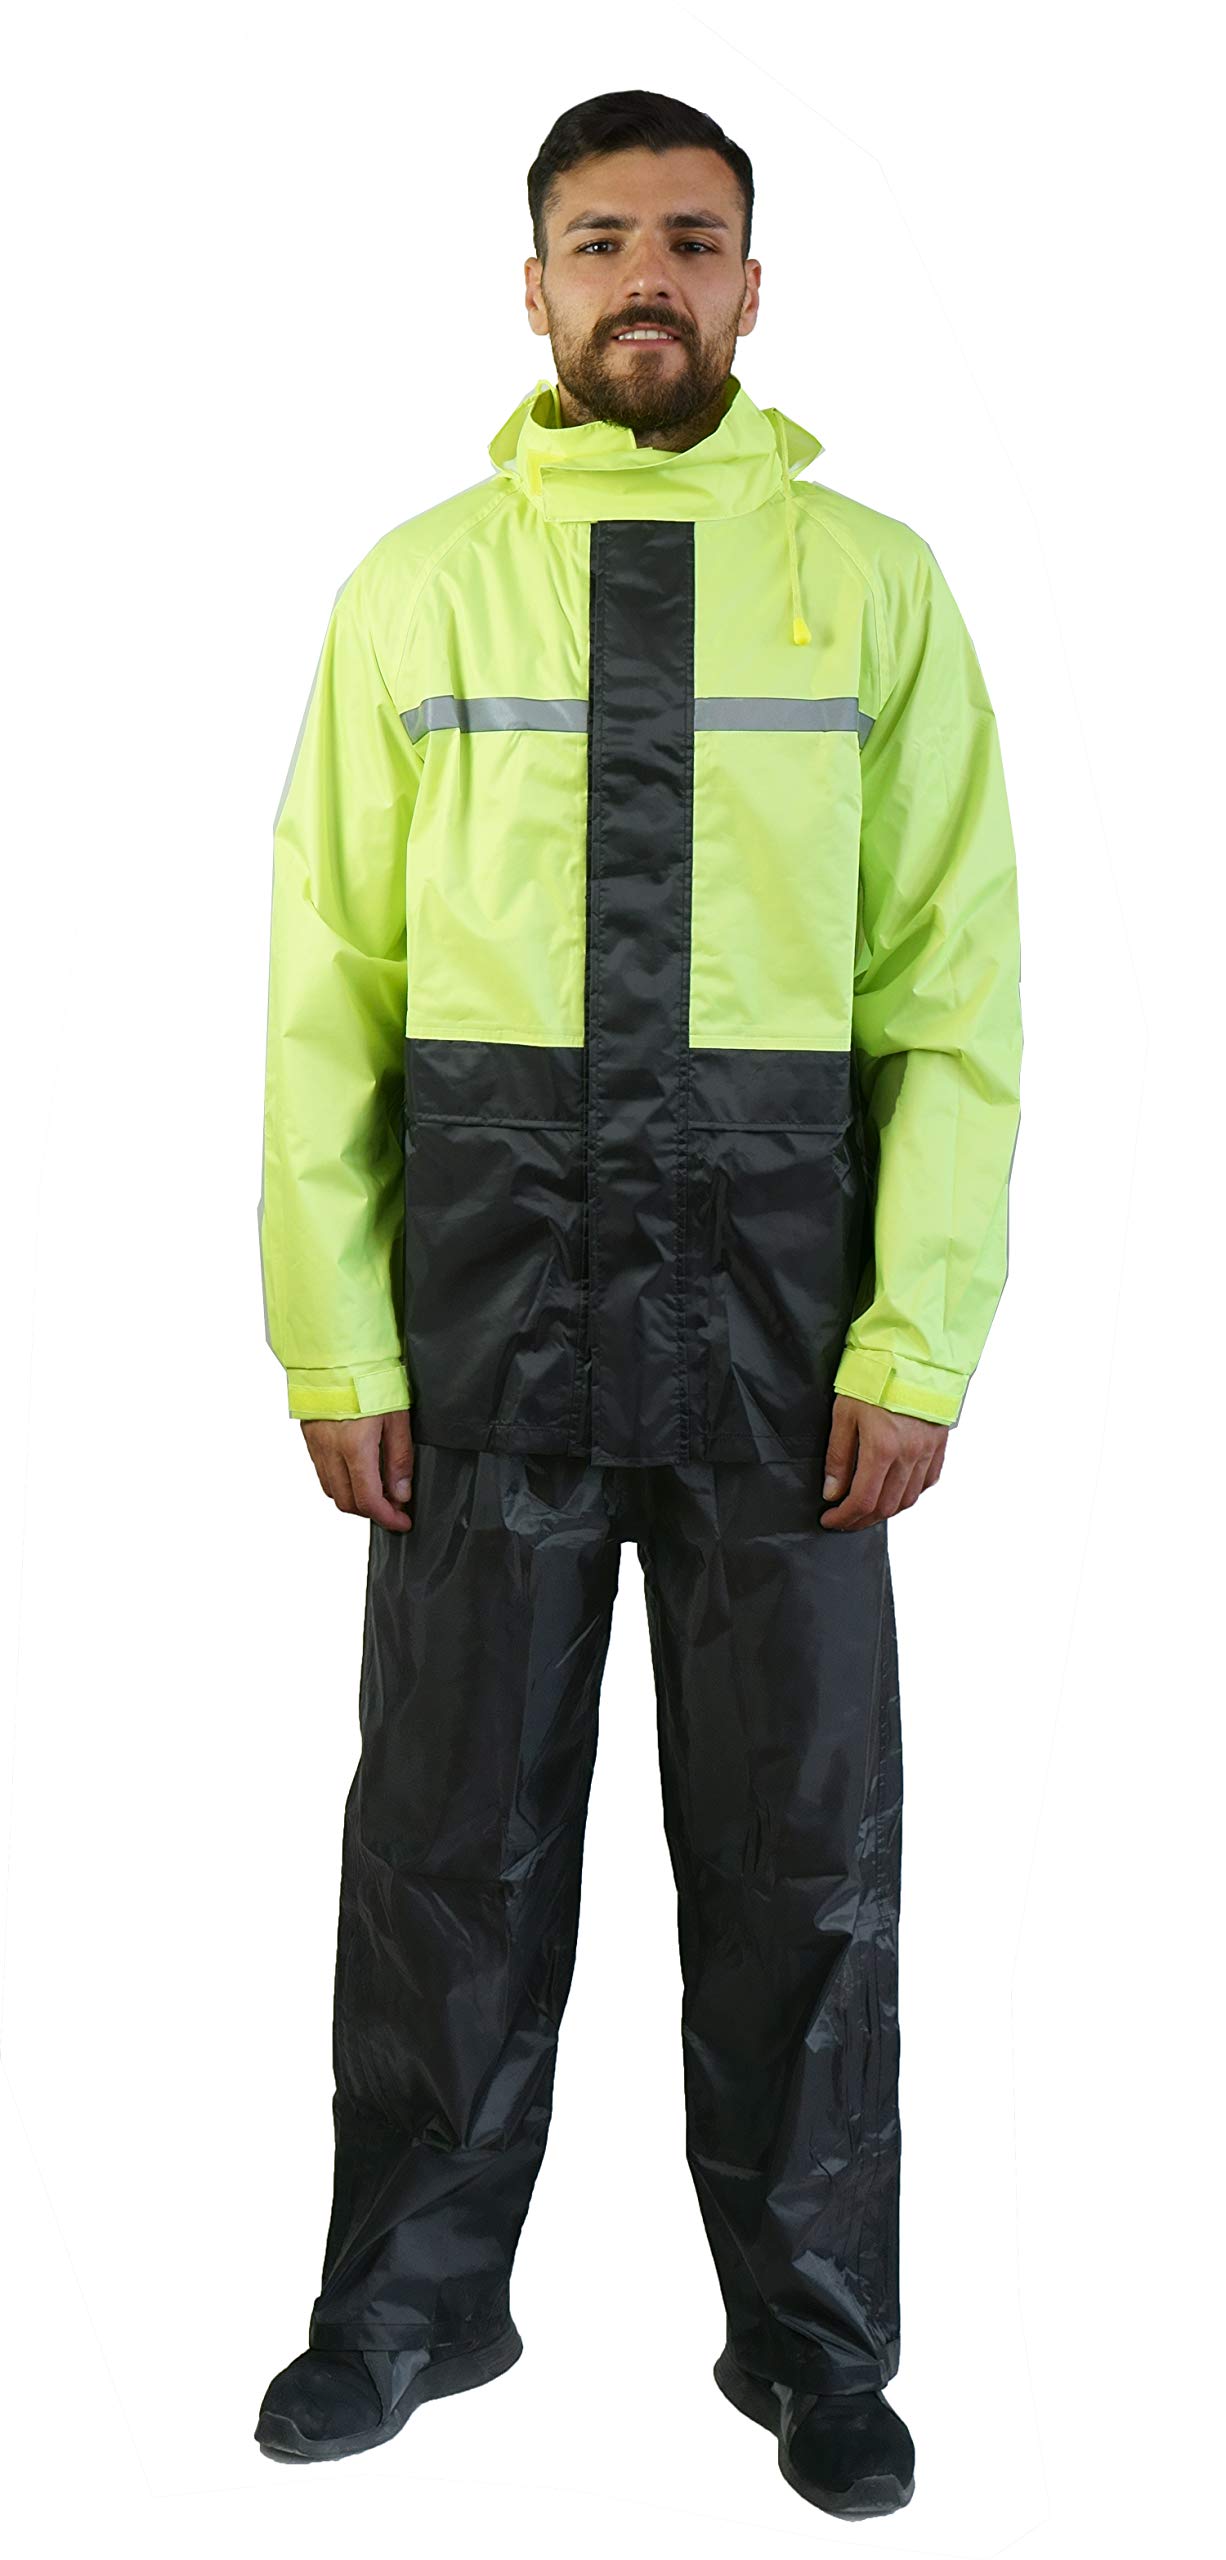 TJ MARVIN Regenschutz Set (Jacke, Hose und Tasche) SPORTIVO E34 XL Nero Giallo fluo von TJ MARVIN